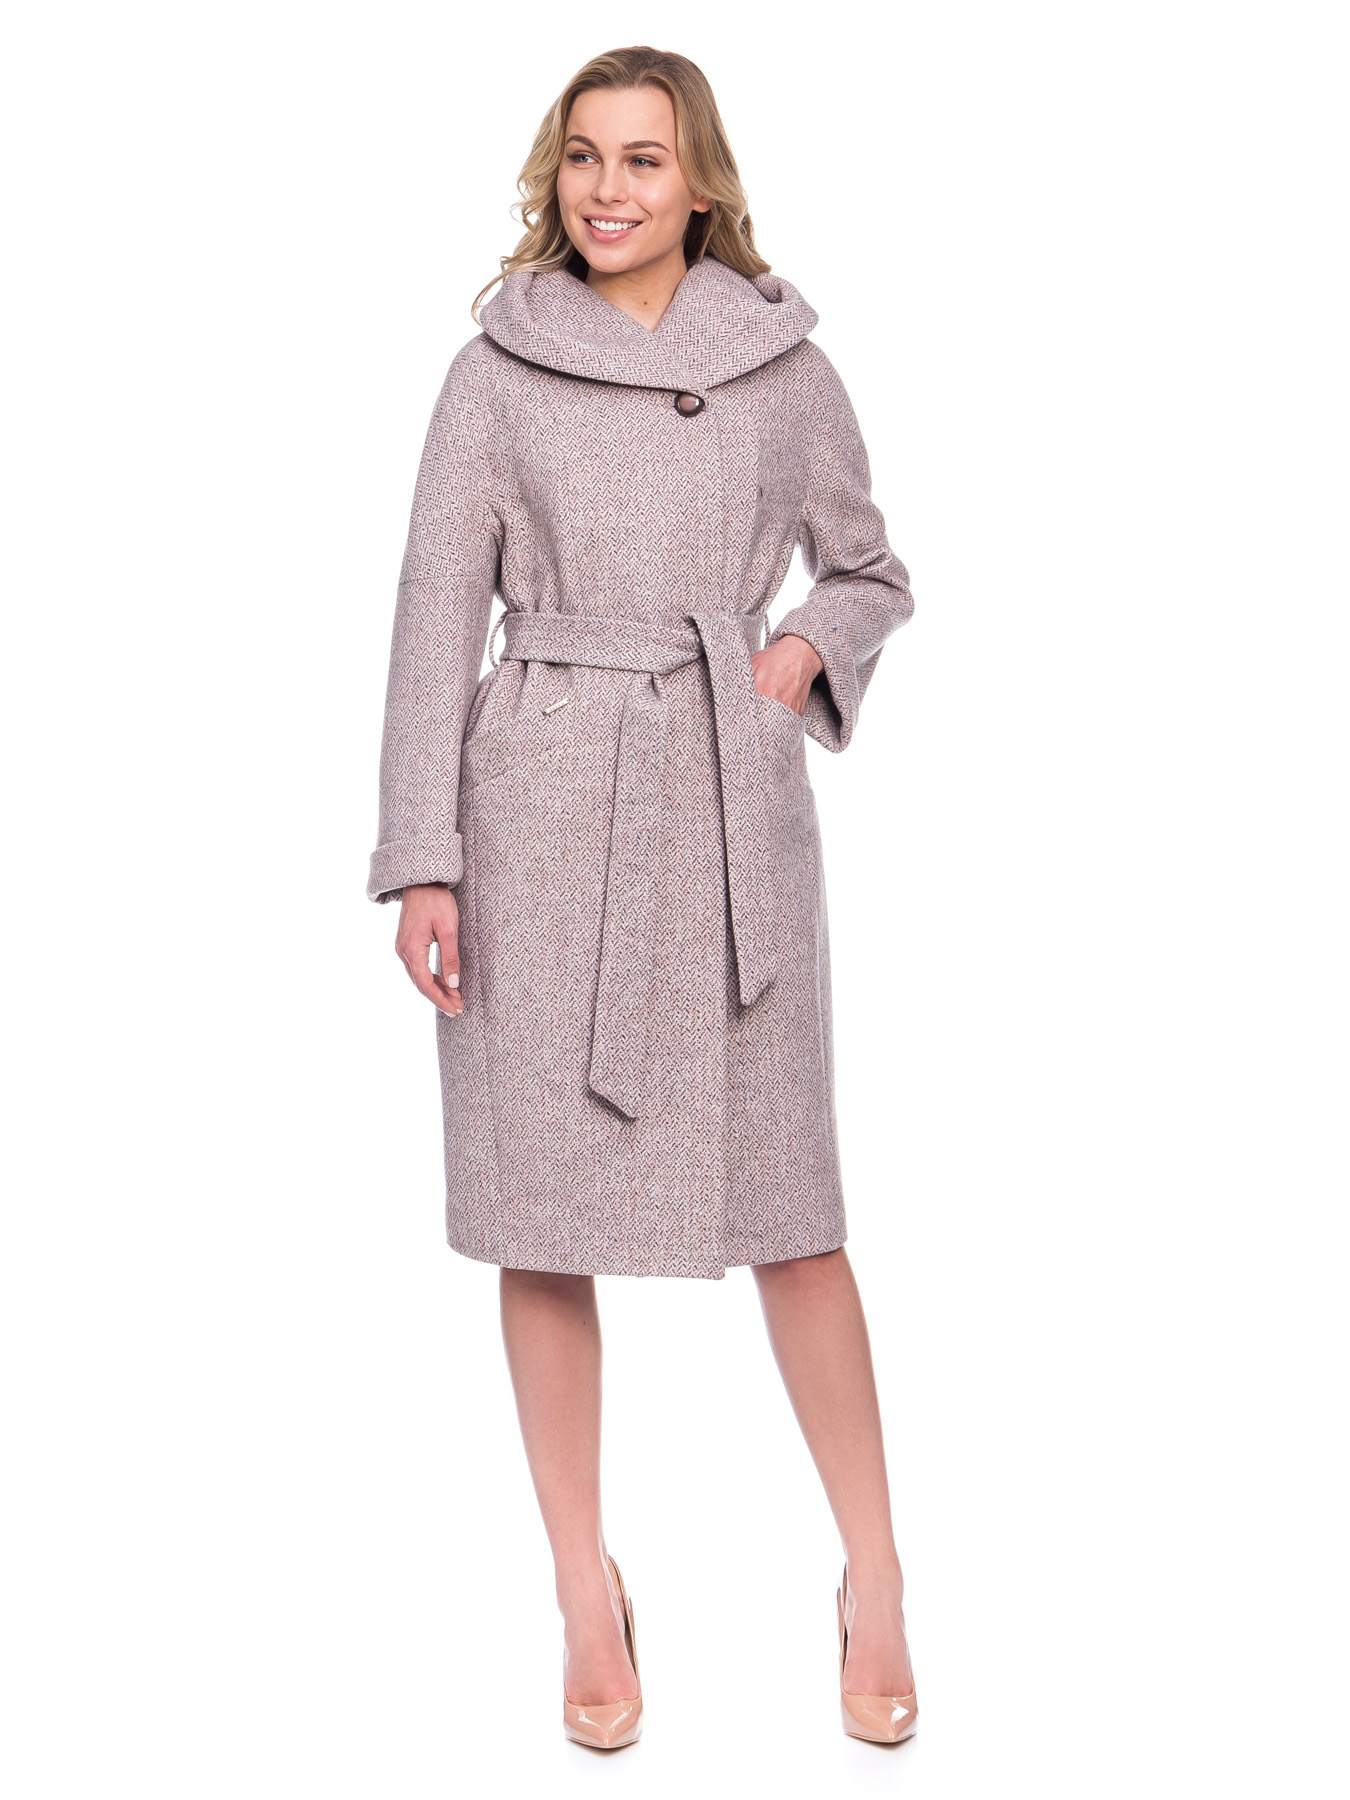 Женское демисезонное пальто в французском стиле из шерсти с капюшоном и поясом